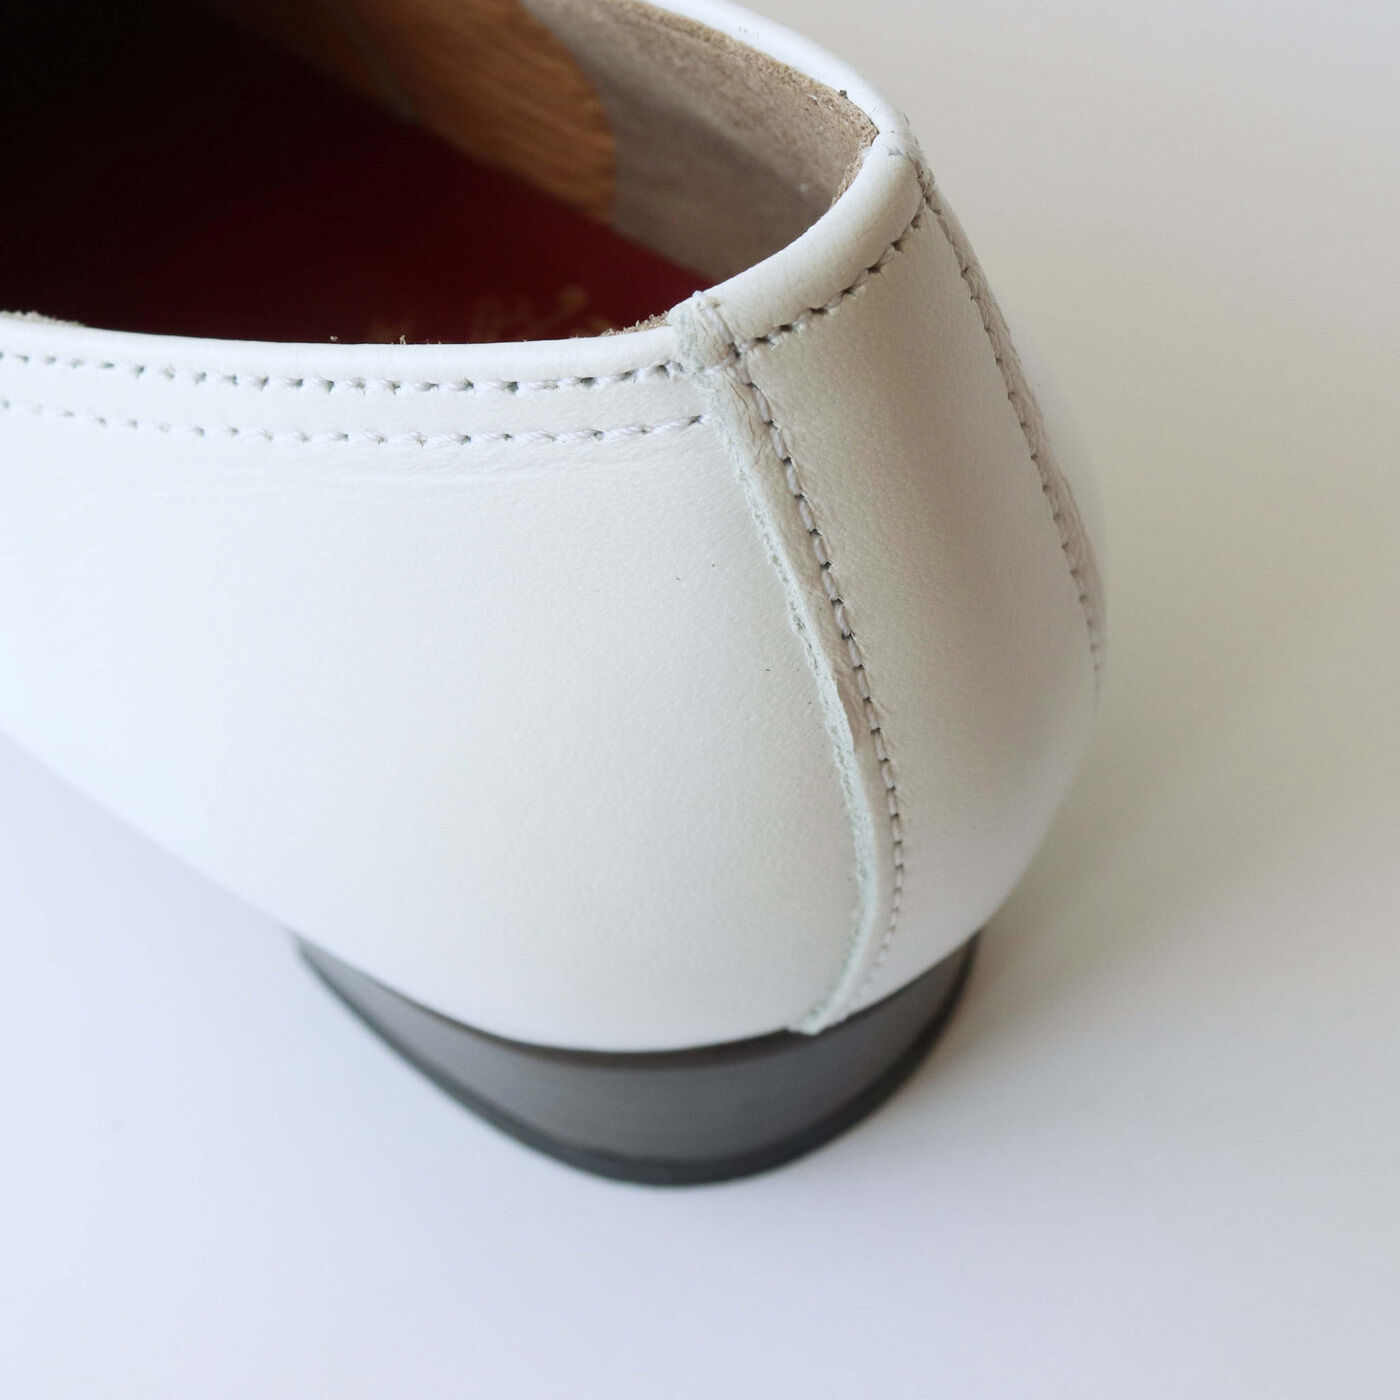 ＆Stories|長田の靴メーカーと作った 職人本革のレースアップシューズ〈ホワイト〉|抜けにくいホールド感のあるかかと部分もポイント。内側サイドに豚革を使い、フィット感と歩きやすさを実現。